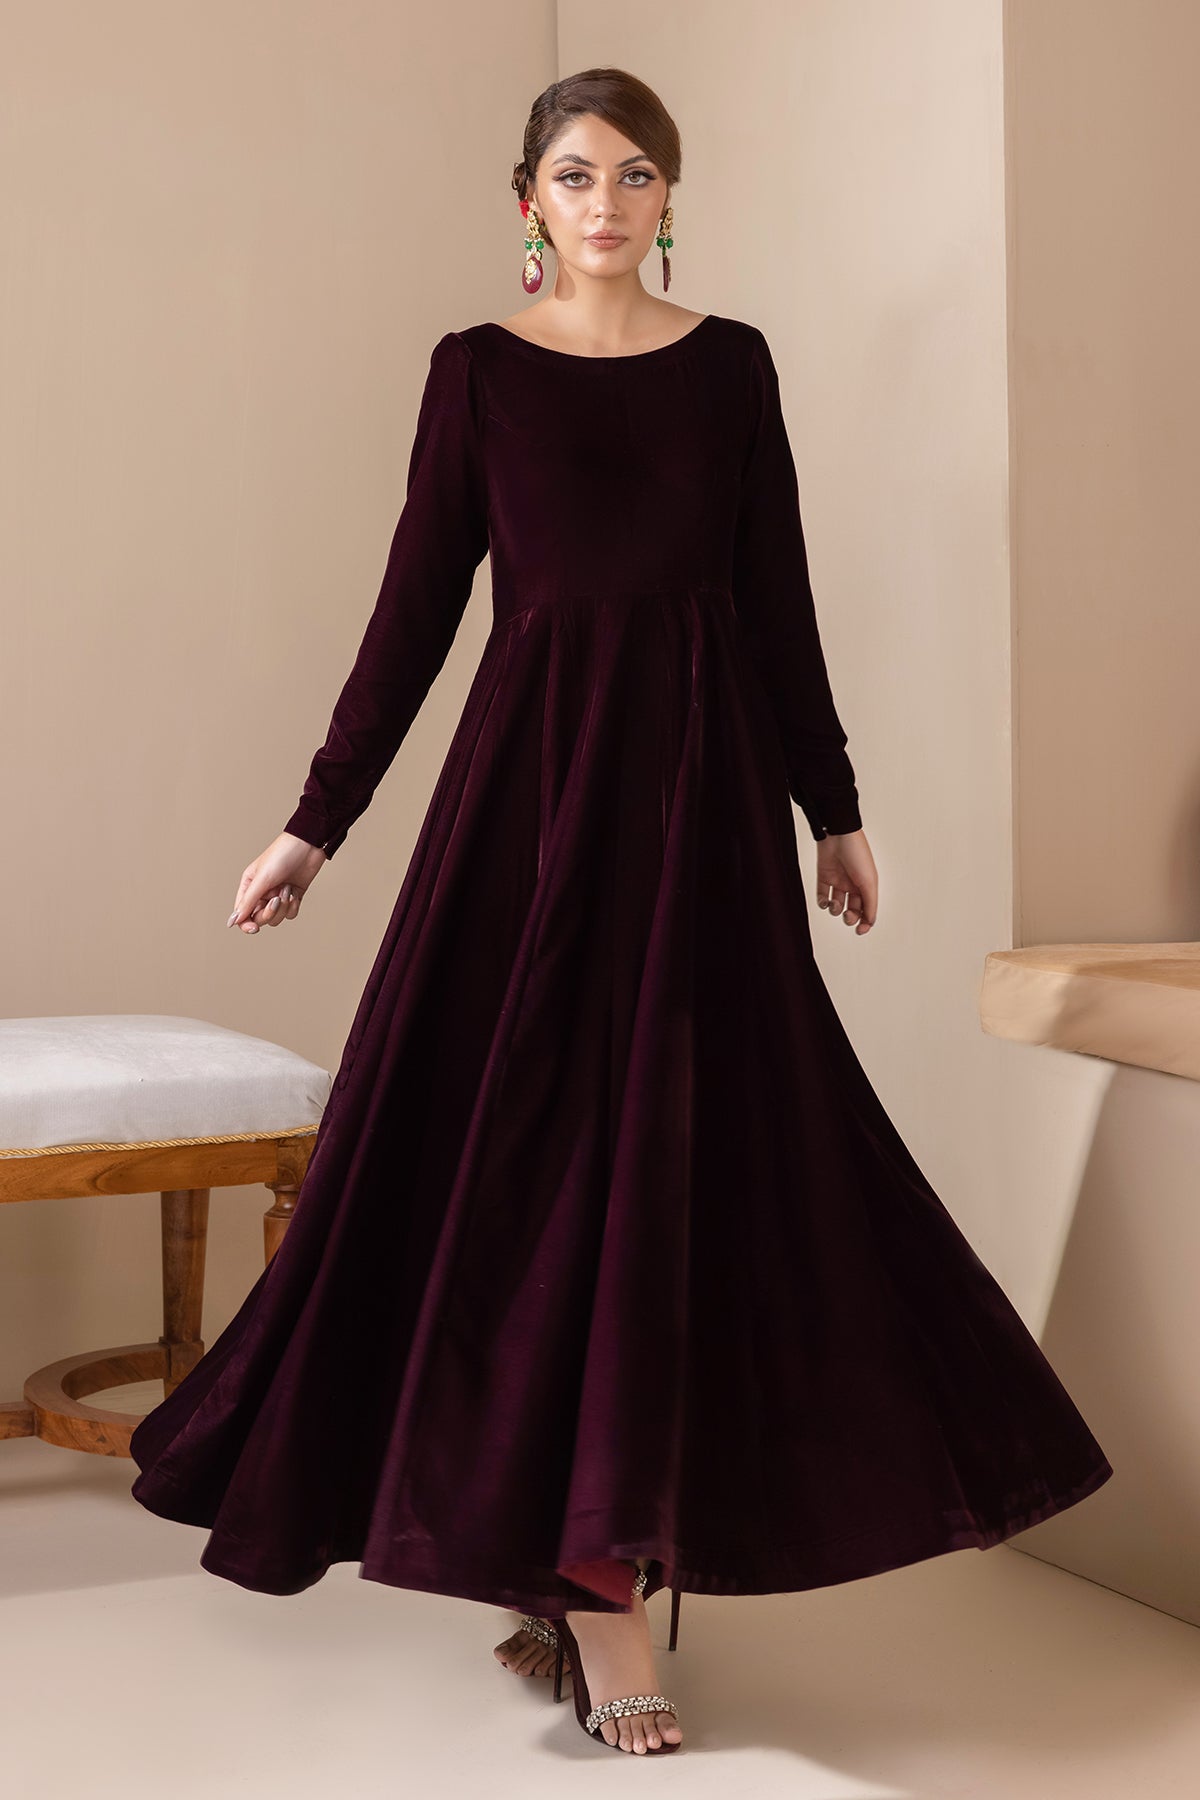 Velvet dress design ideas | Maroon Velvet dress design ideas | Winter wear  2023 | Pakistani winter wear ideas | Latest dress design ideas… | Instagram